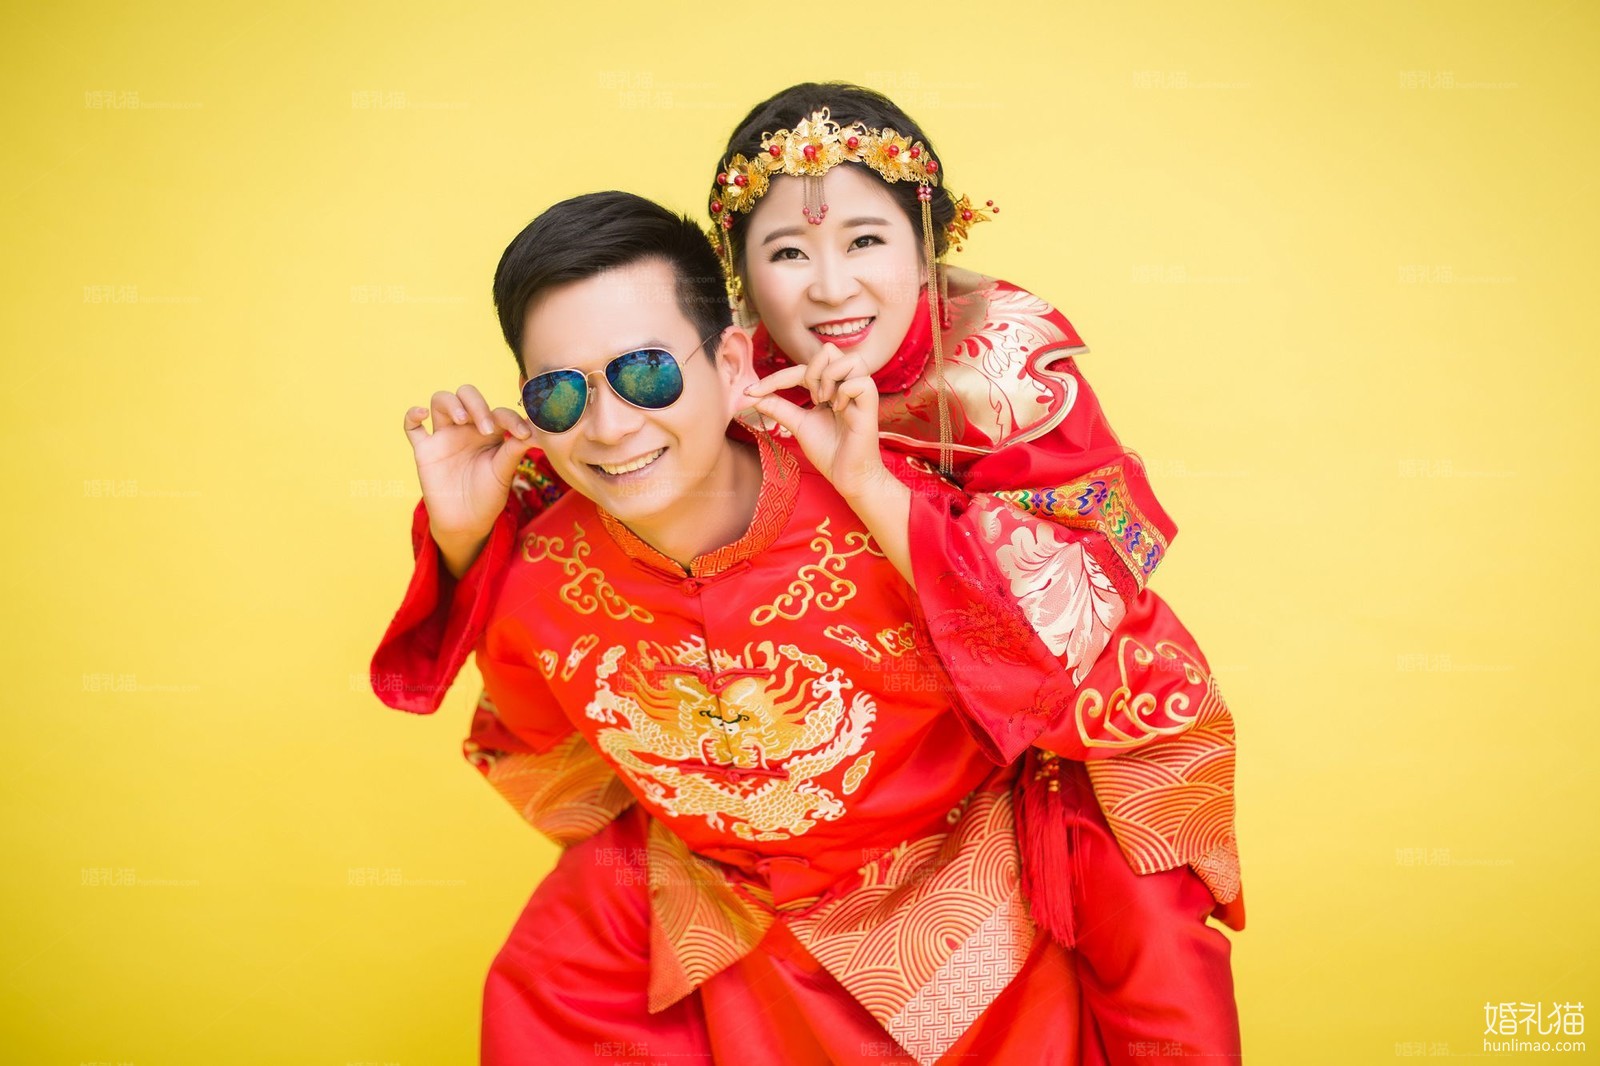 中国风婚纱照图片|纯色背景结婚照,[中国风, 纯色背景],云浮婚纱照,婚纱照图片